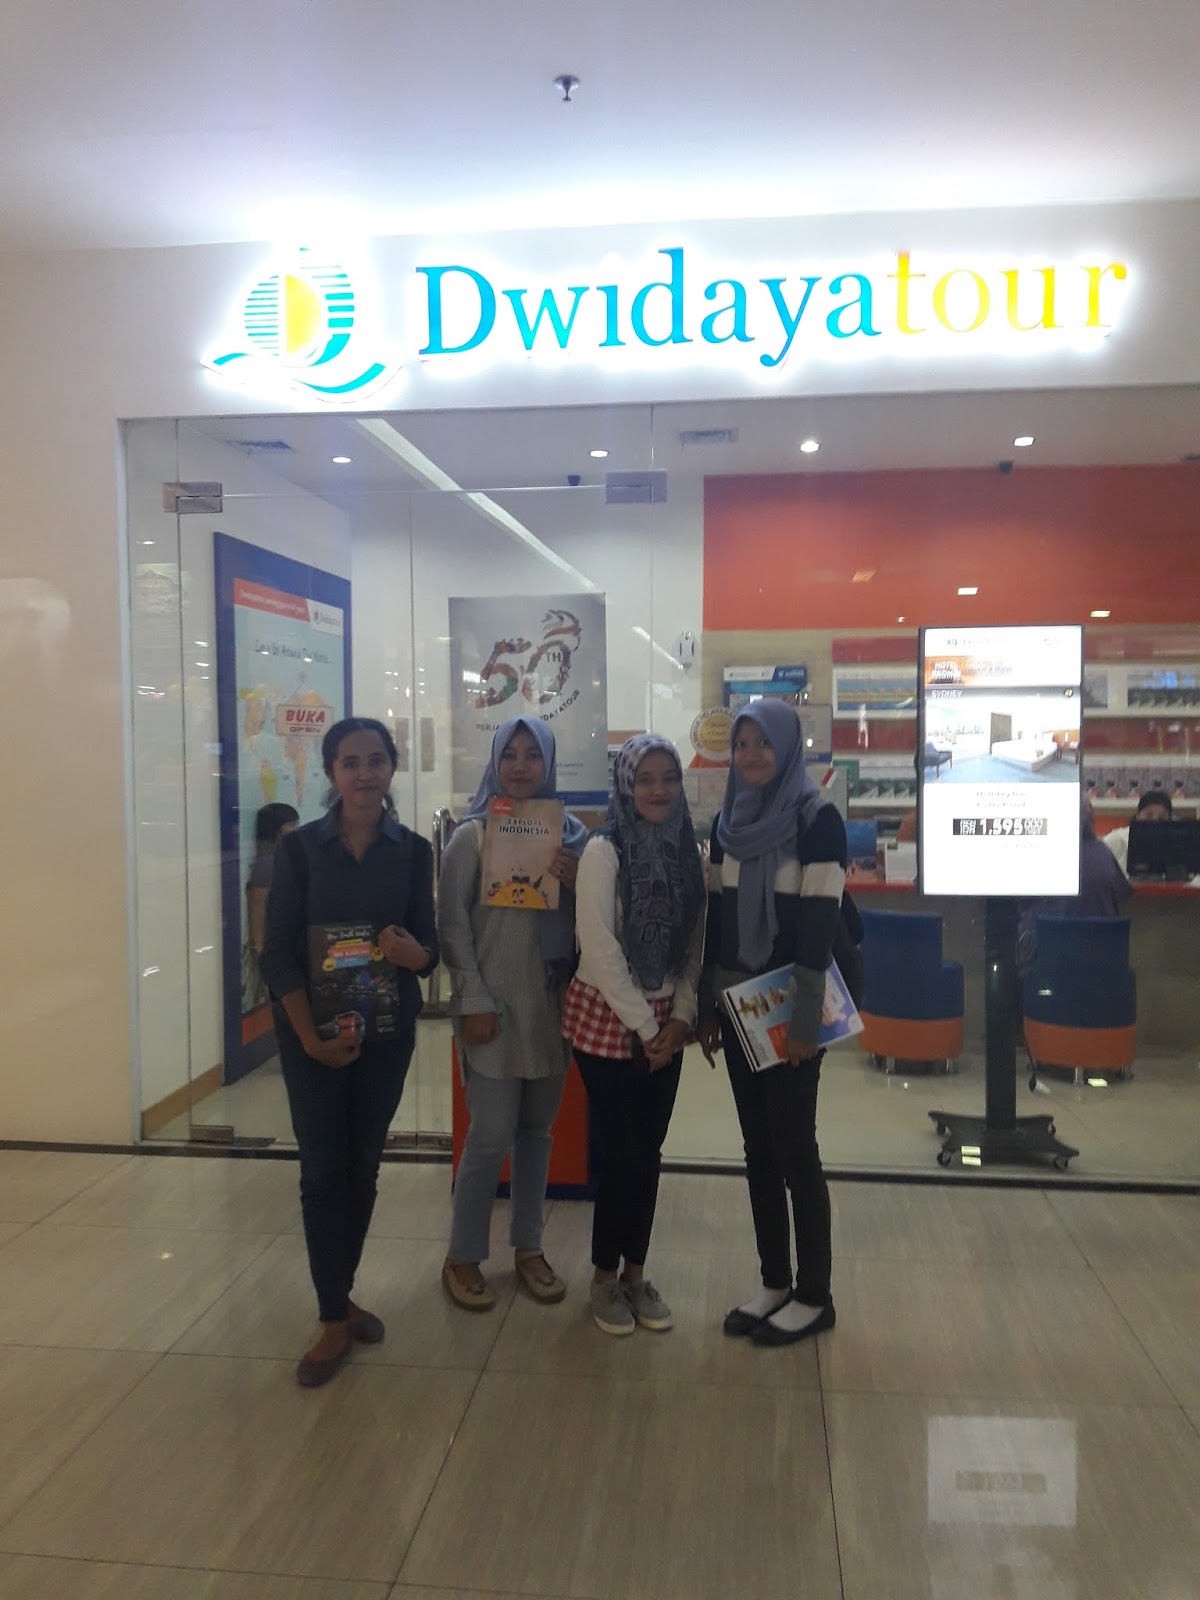 dwidaya tour visa uk